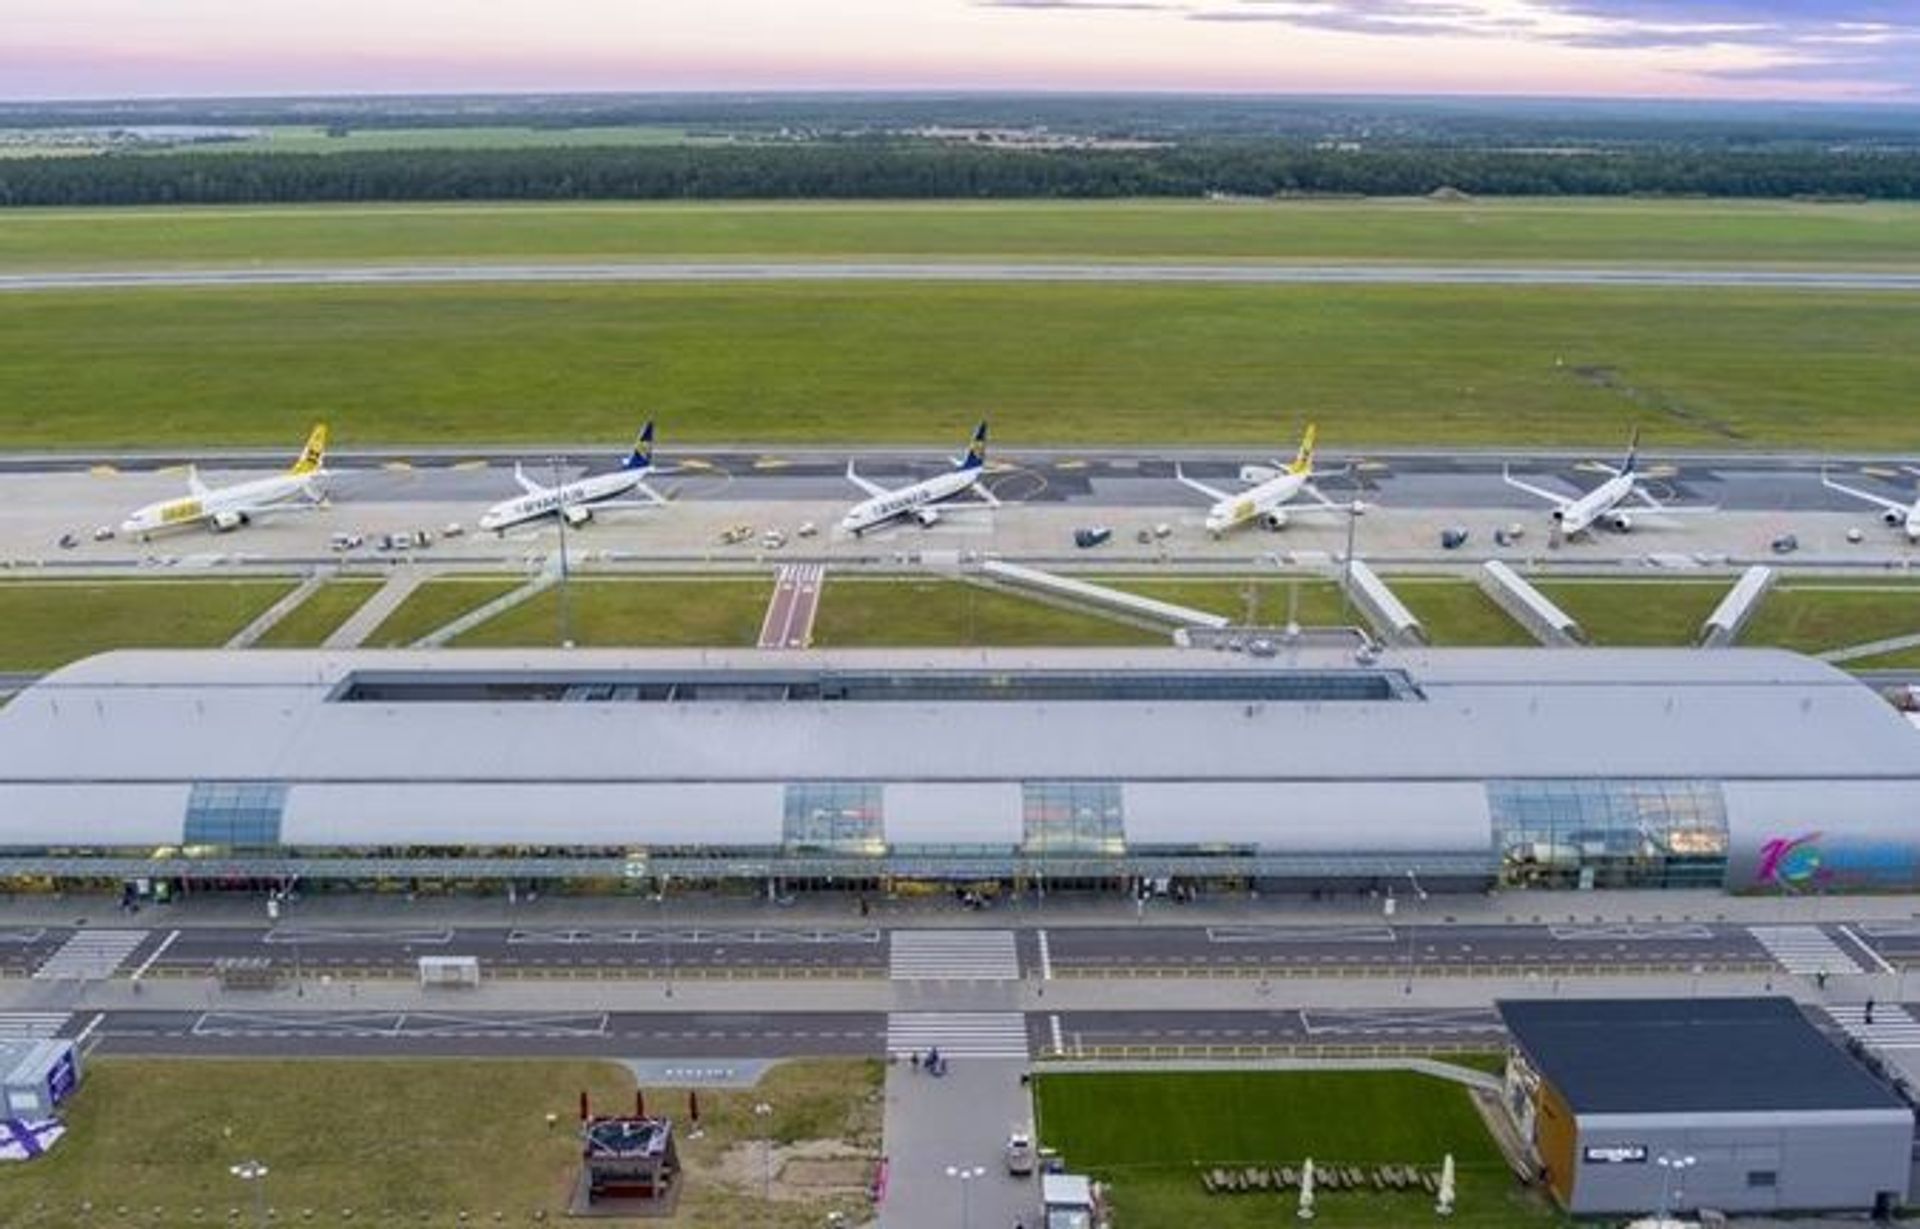 Lotnisko w Modlinie się rozbudowuje